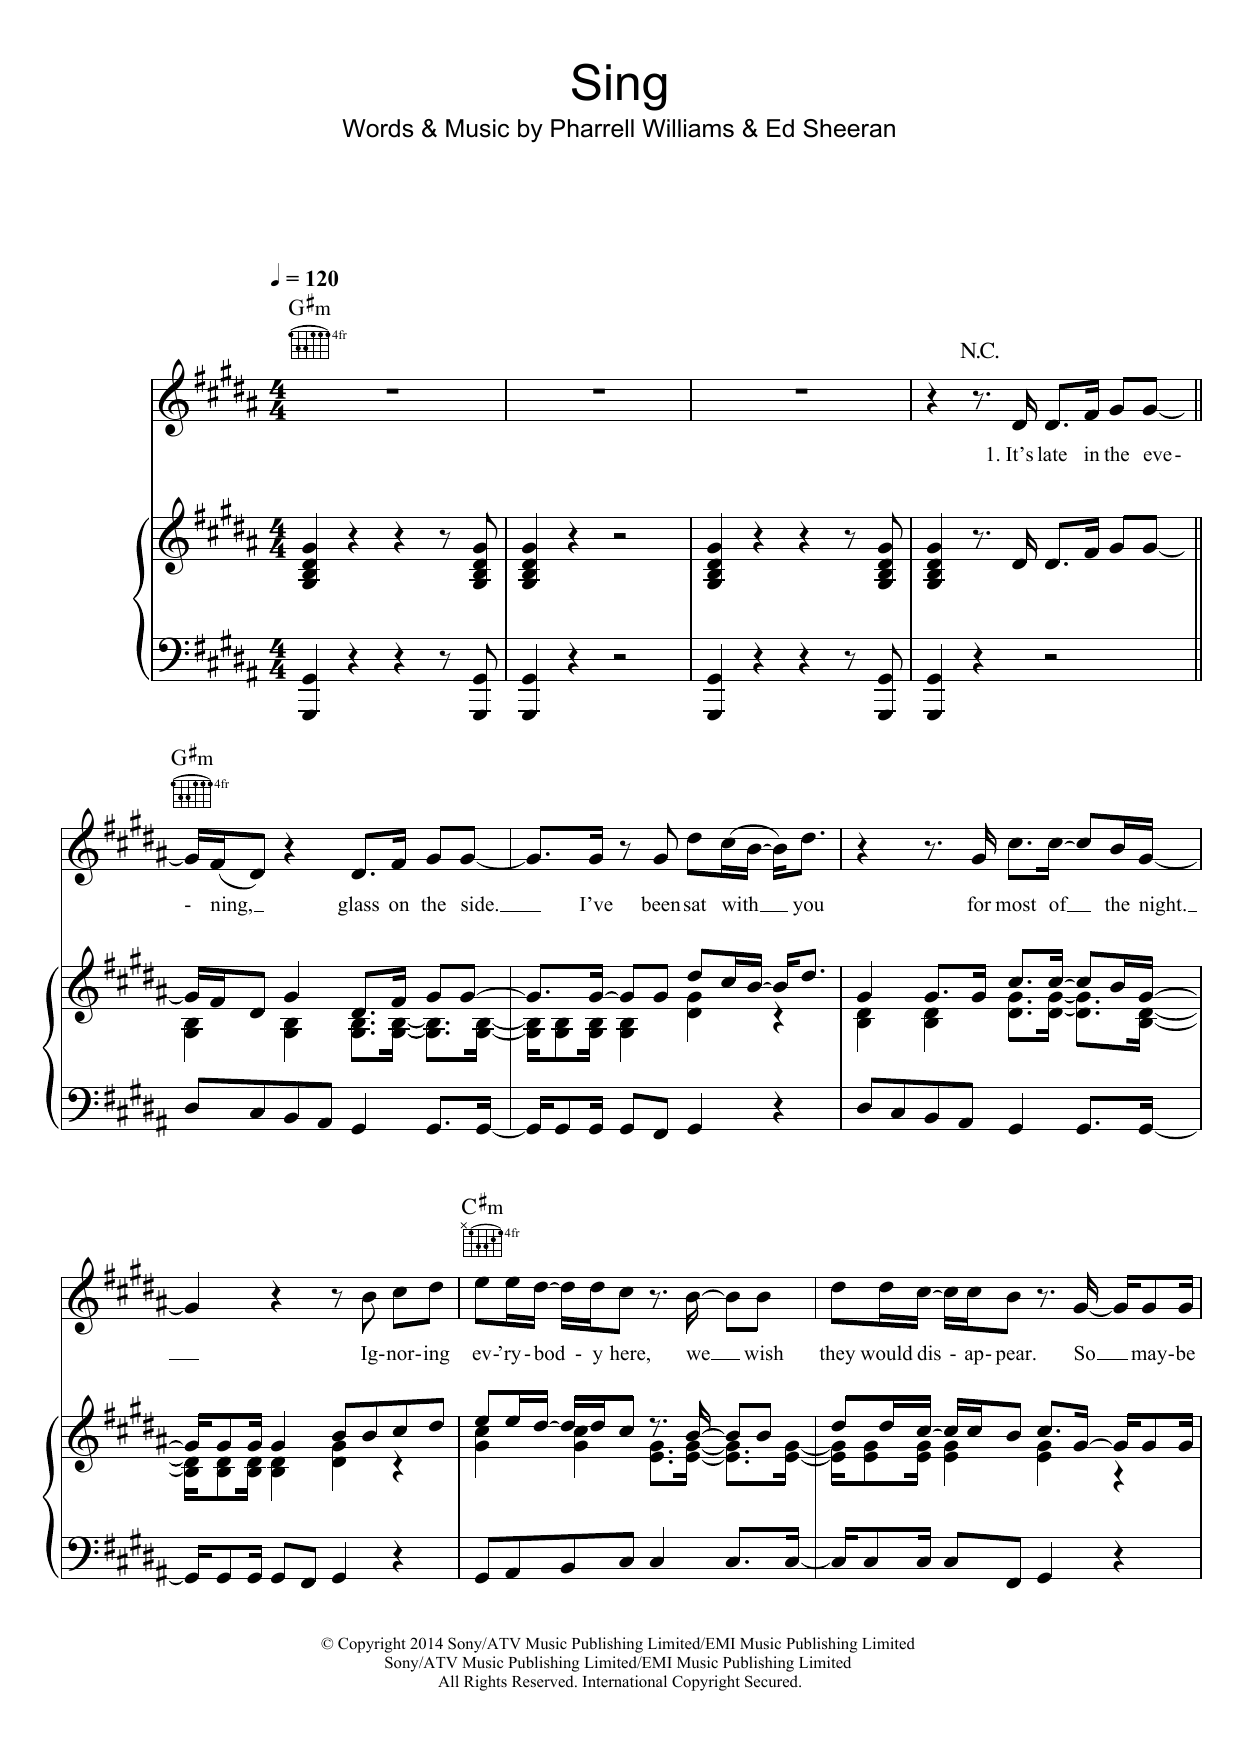 Ed Sheeran Sing Sheet Music Notes & Chords for Ukulele - Download or Print PDF